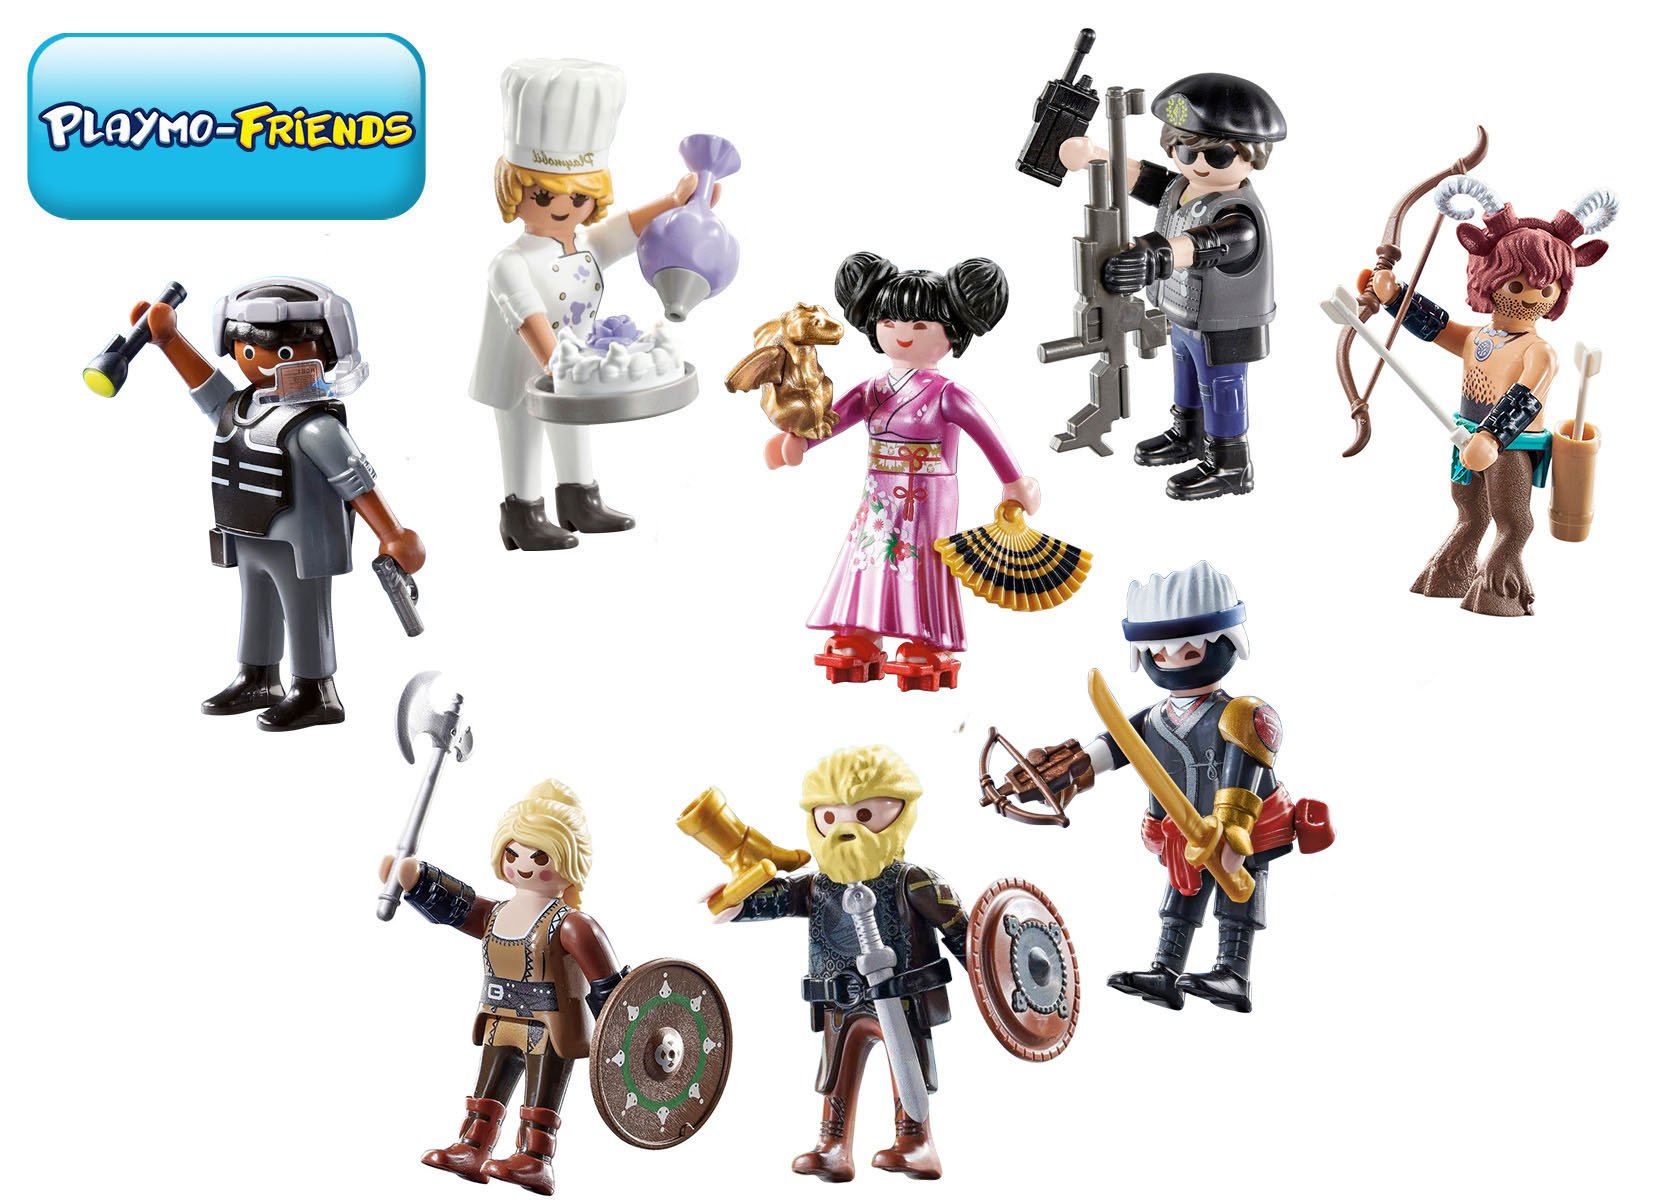 Playmobil Playmo-Friends Gemischtes Spielfiguren-Set